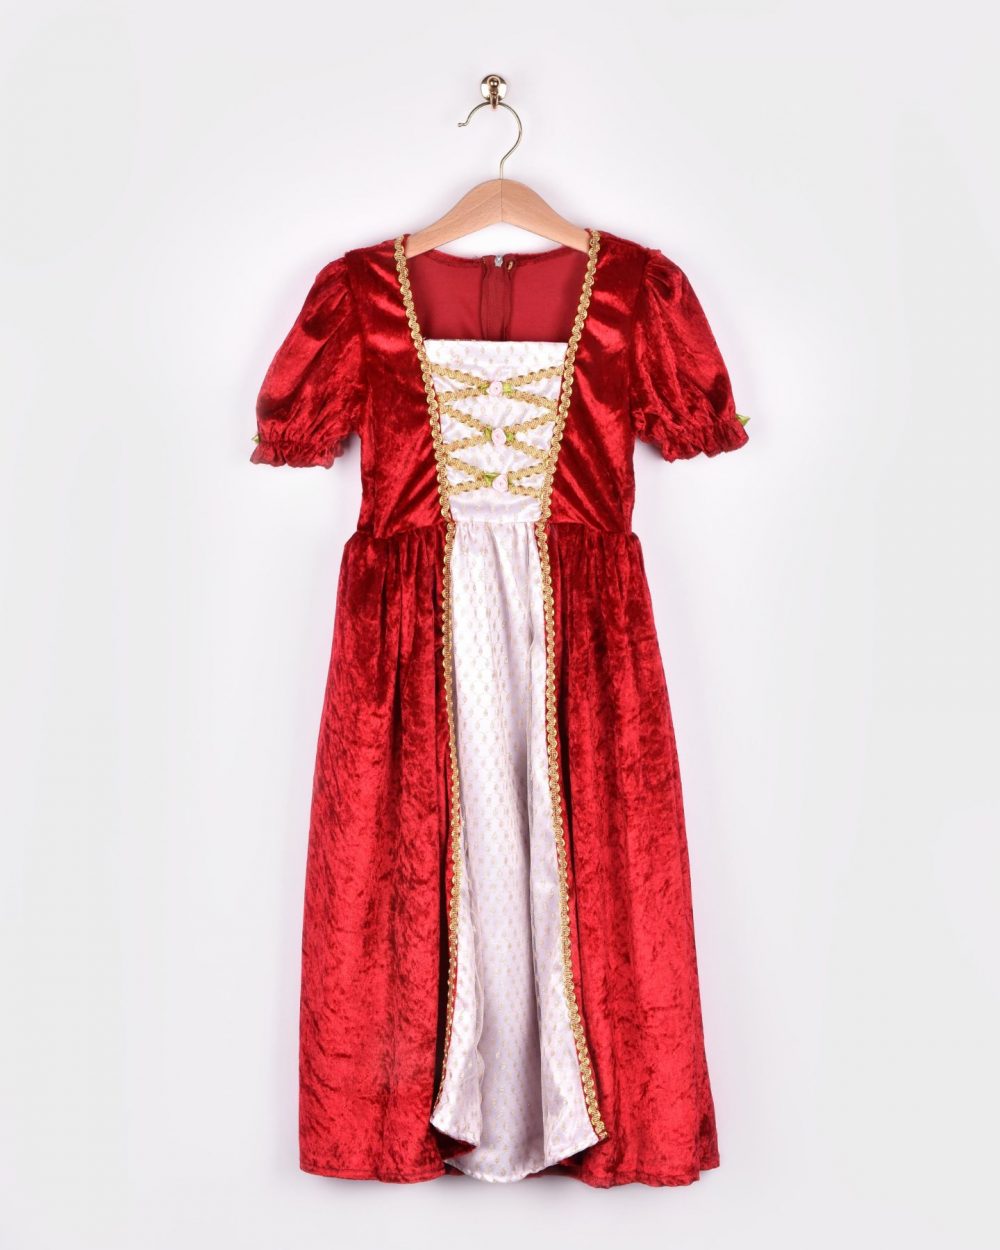 En röd prinsessklänning med vitt framstycke, gyllene detaljer och rosa rosdekorationer. Klänningen hänger på en galge.